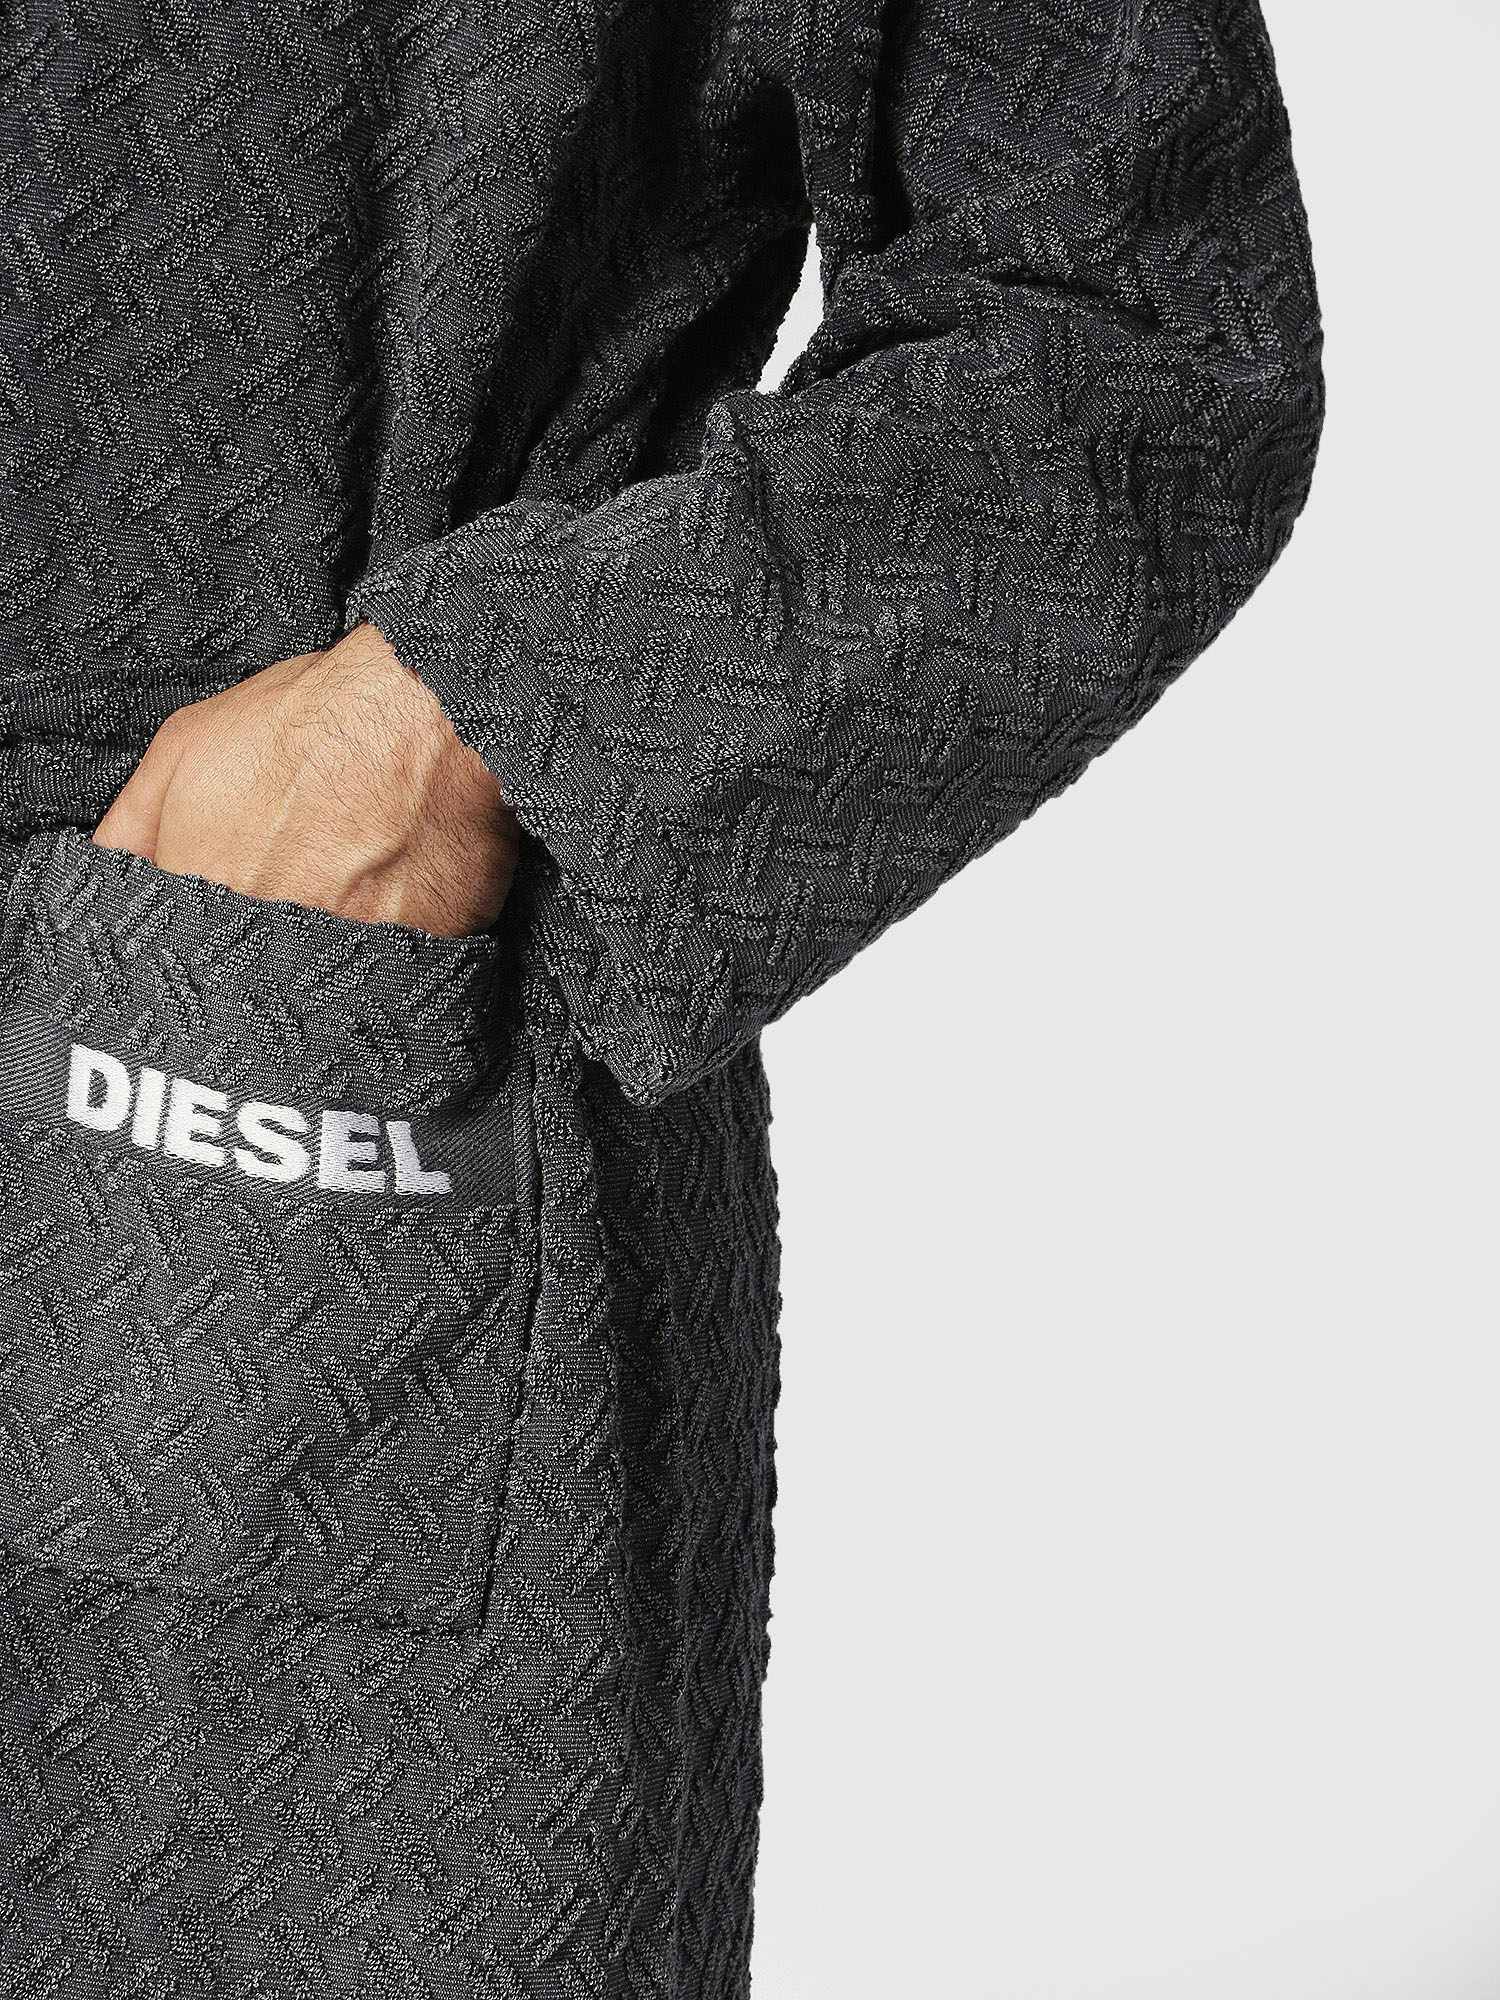 Diesel - 72302 STAGE size S/M, Dark grey - Image 3